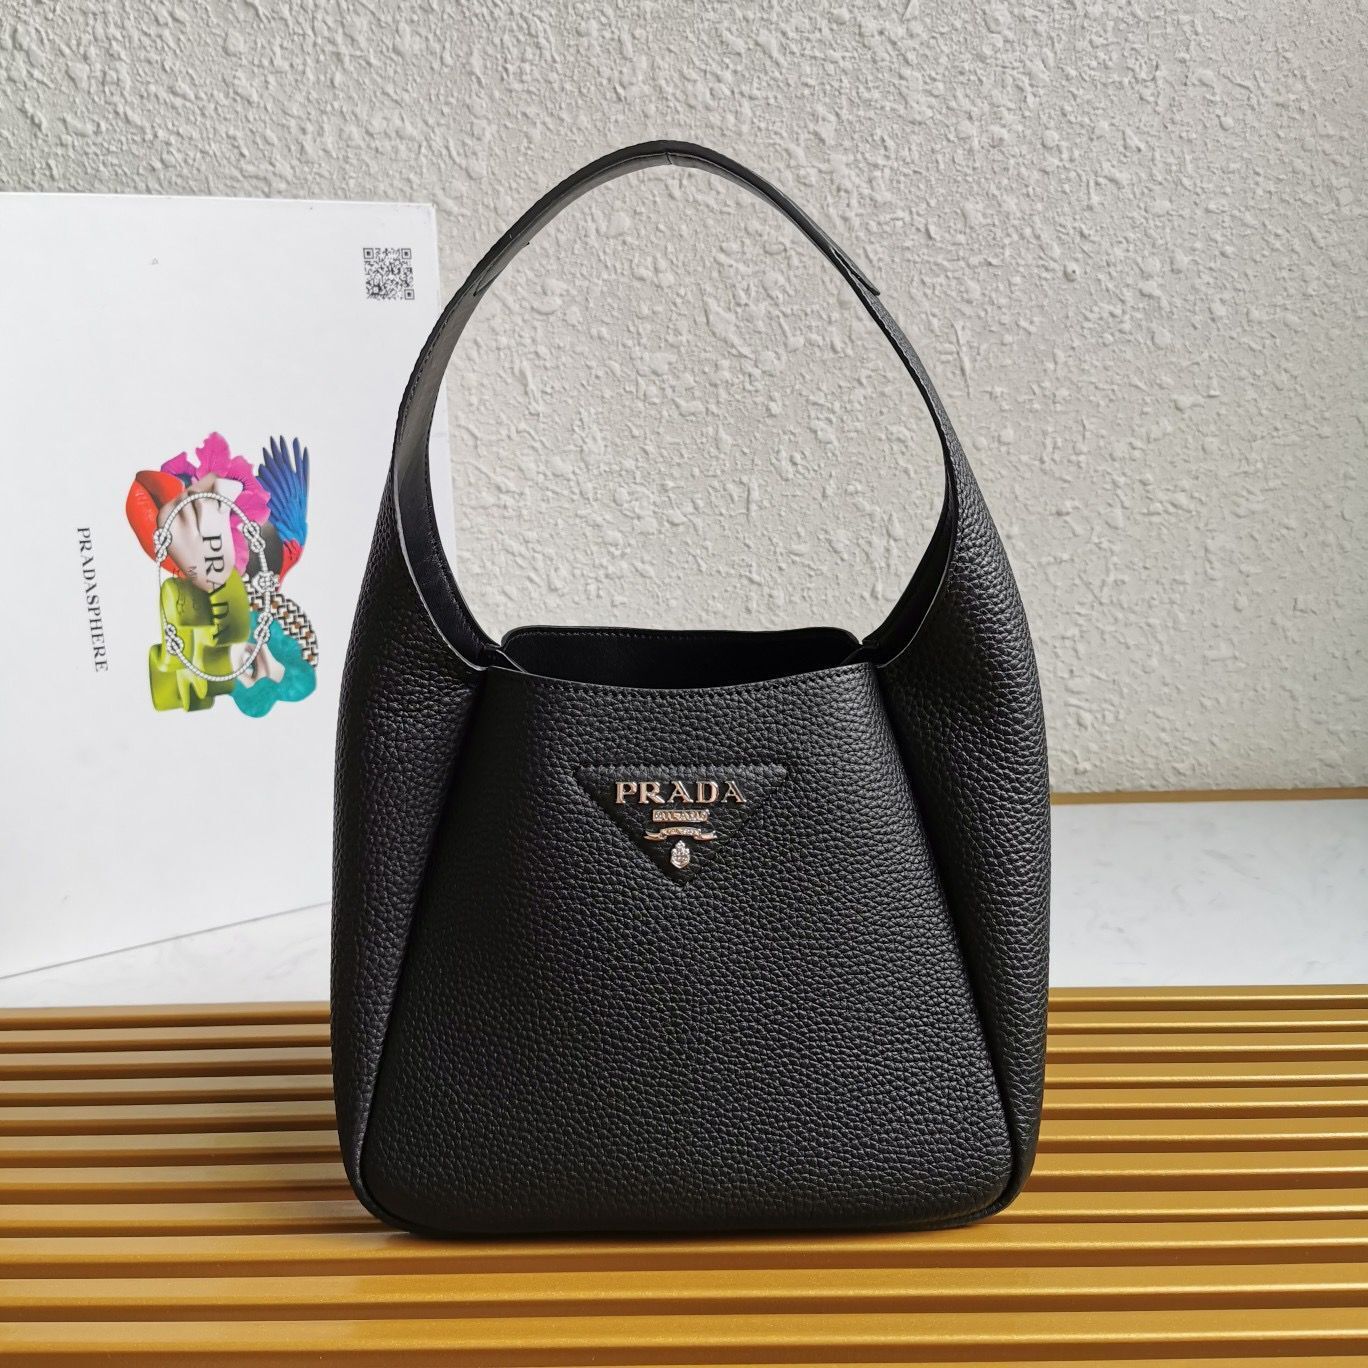 Prada original leather tote bag 1BC127 black